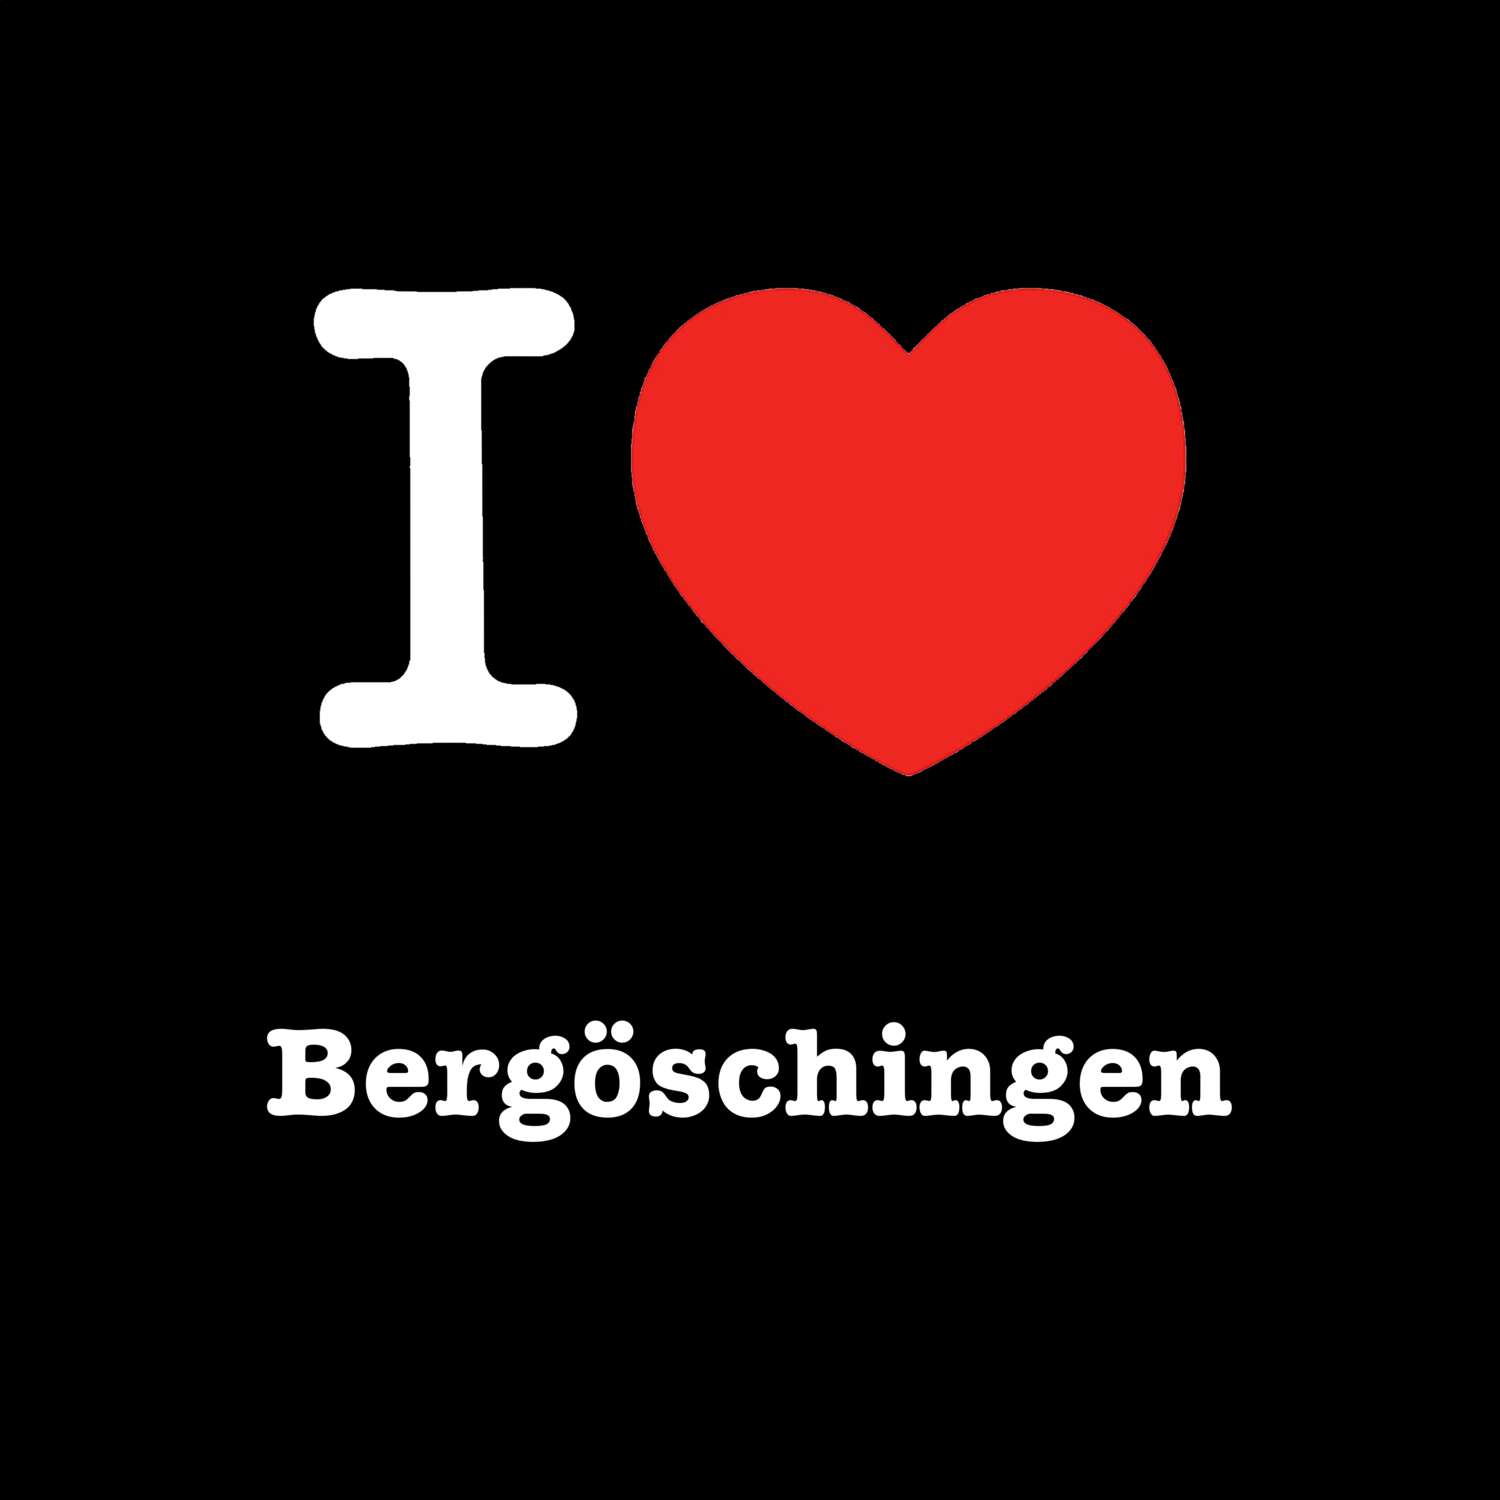 Bergöschingen T-Shirt »I love«